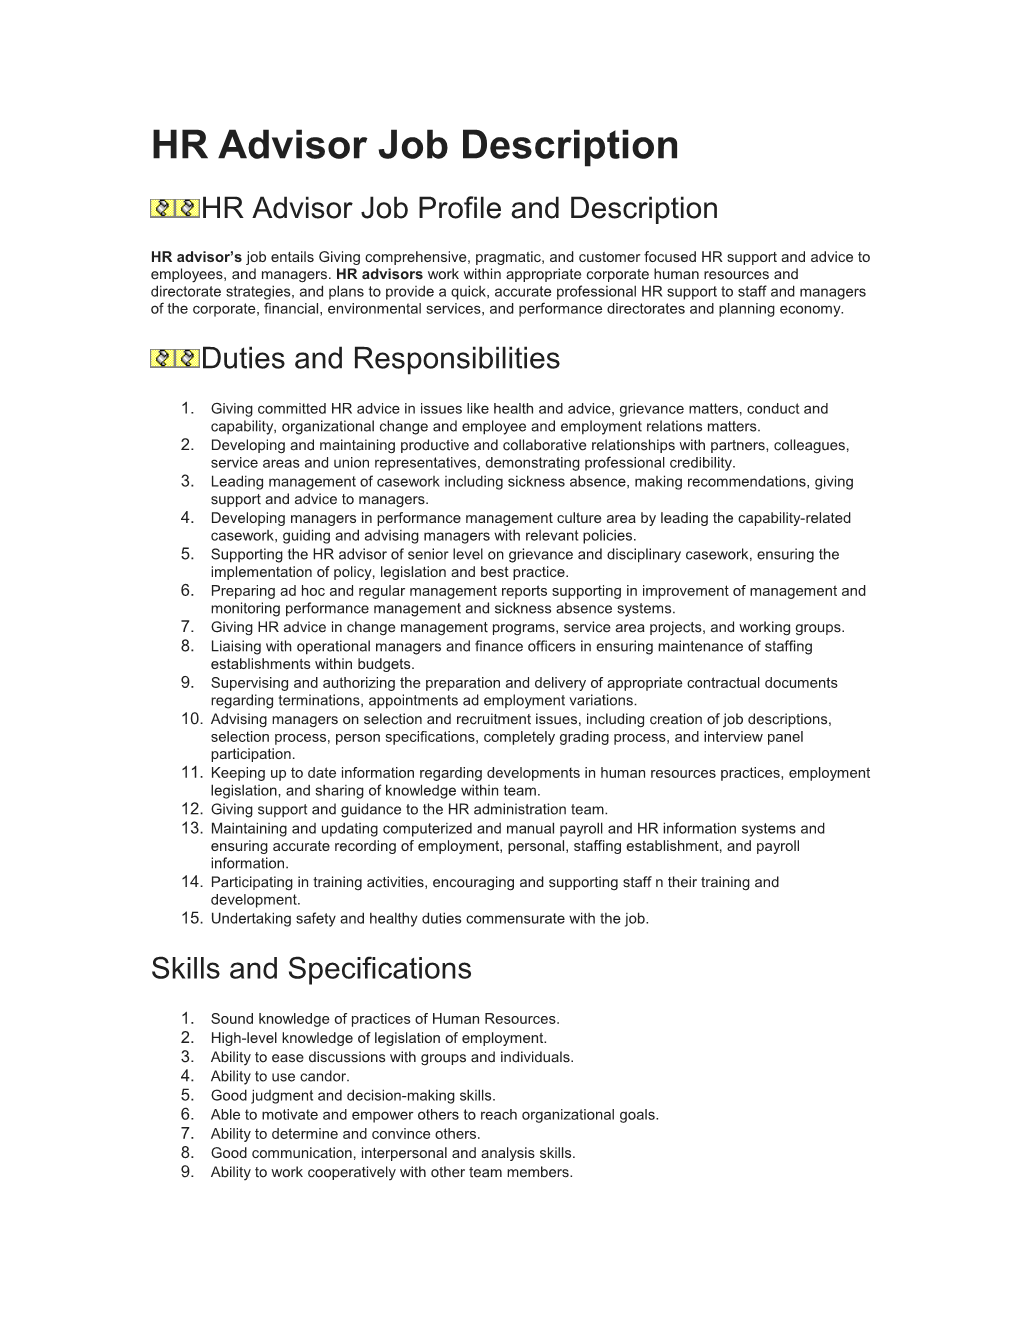 HR Advisor Job Profile and Description